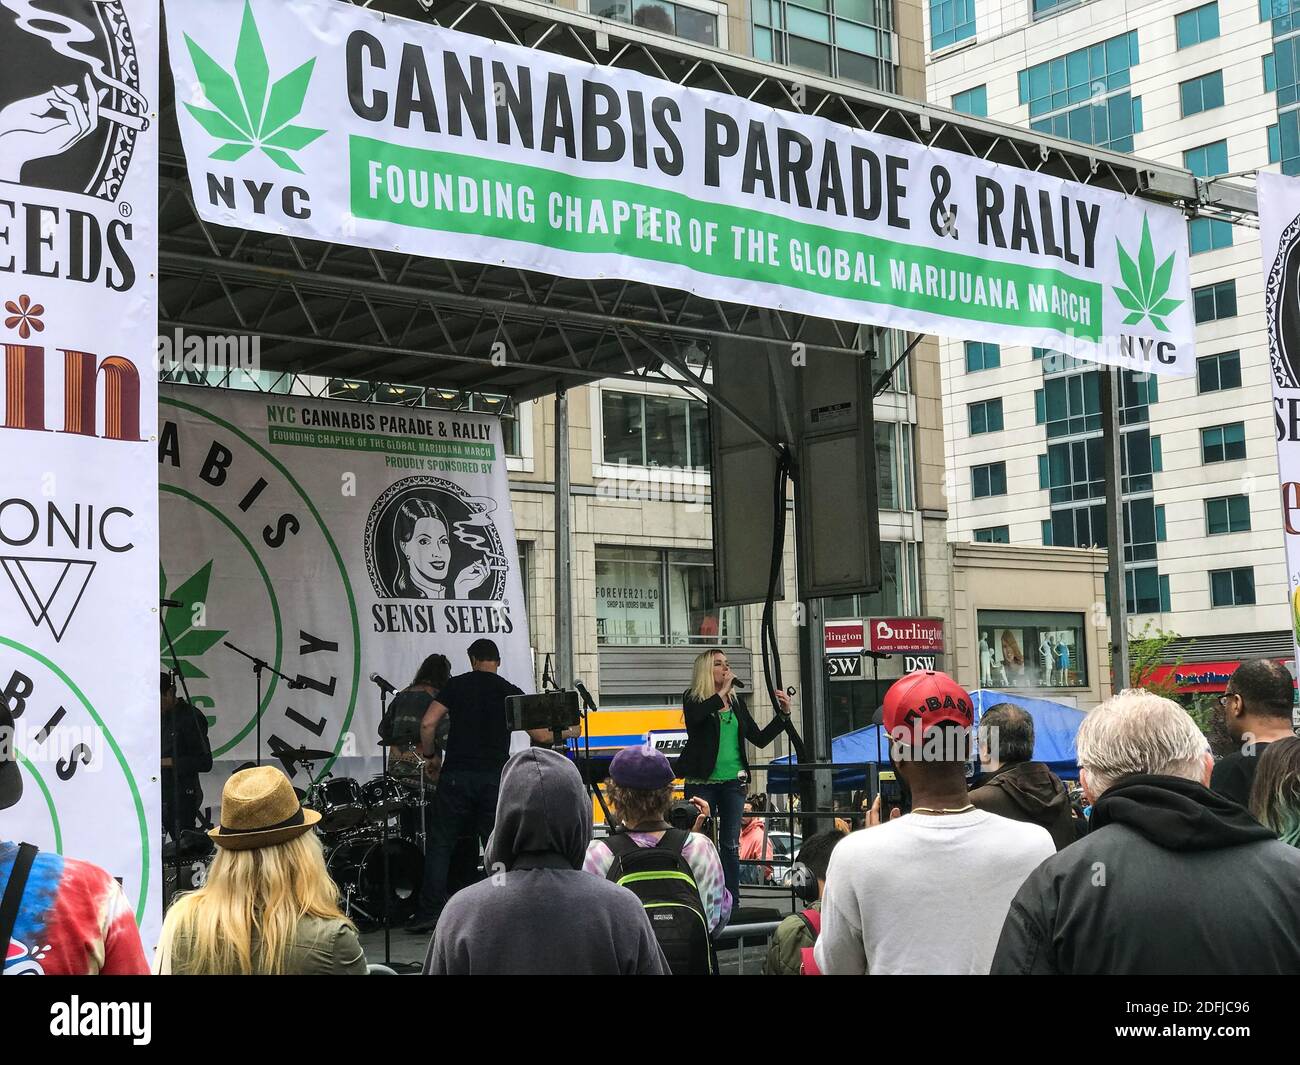 New York, NY, USA - 4 mai 2019: Les gens se rassemblent lors d'un défilé de cannabis et se rassemblent à Union Square le 4 mai 2019 à New York. Banque D'Images